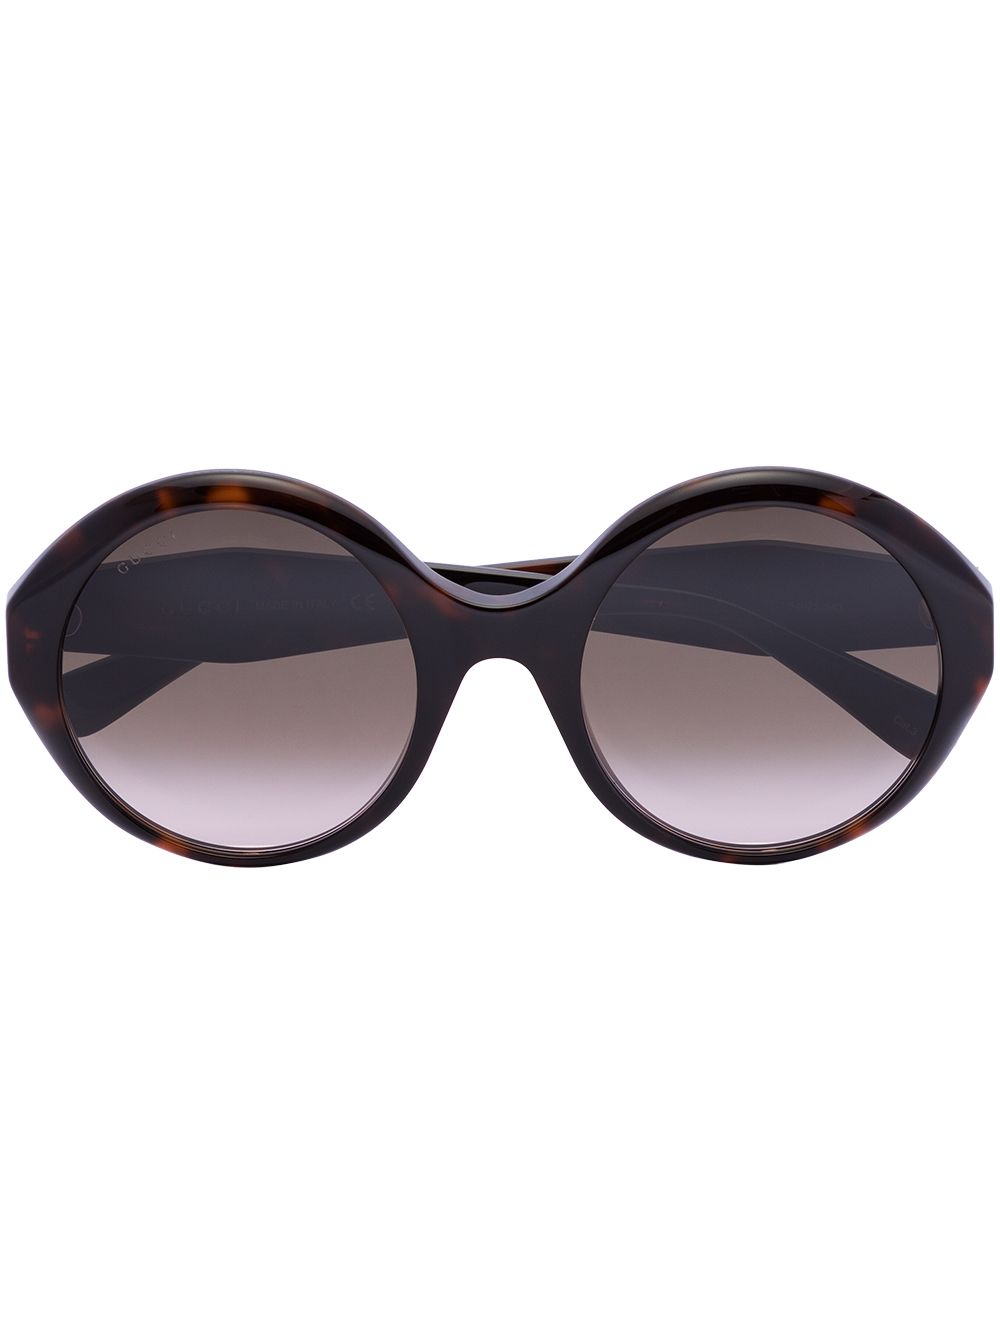 Gucci Eyewear Havana tortoiseshell round-frame sunglasses - Brown von Gucci Eyewear